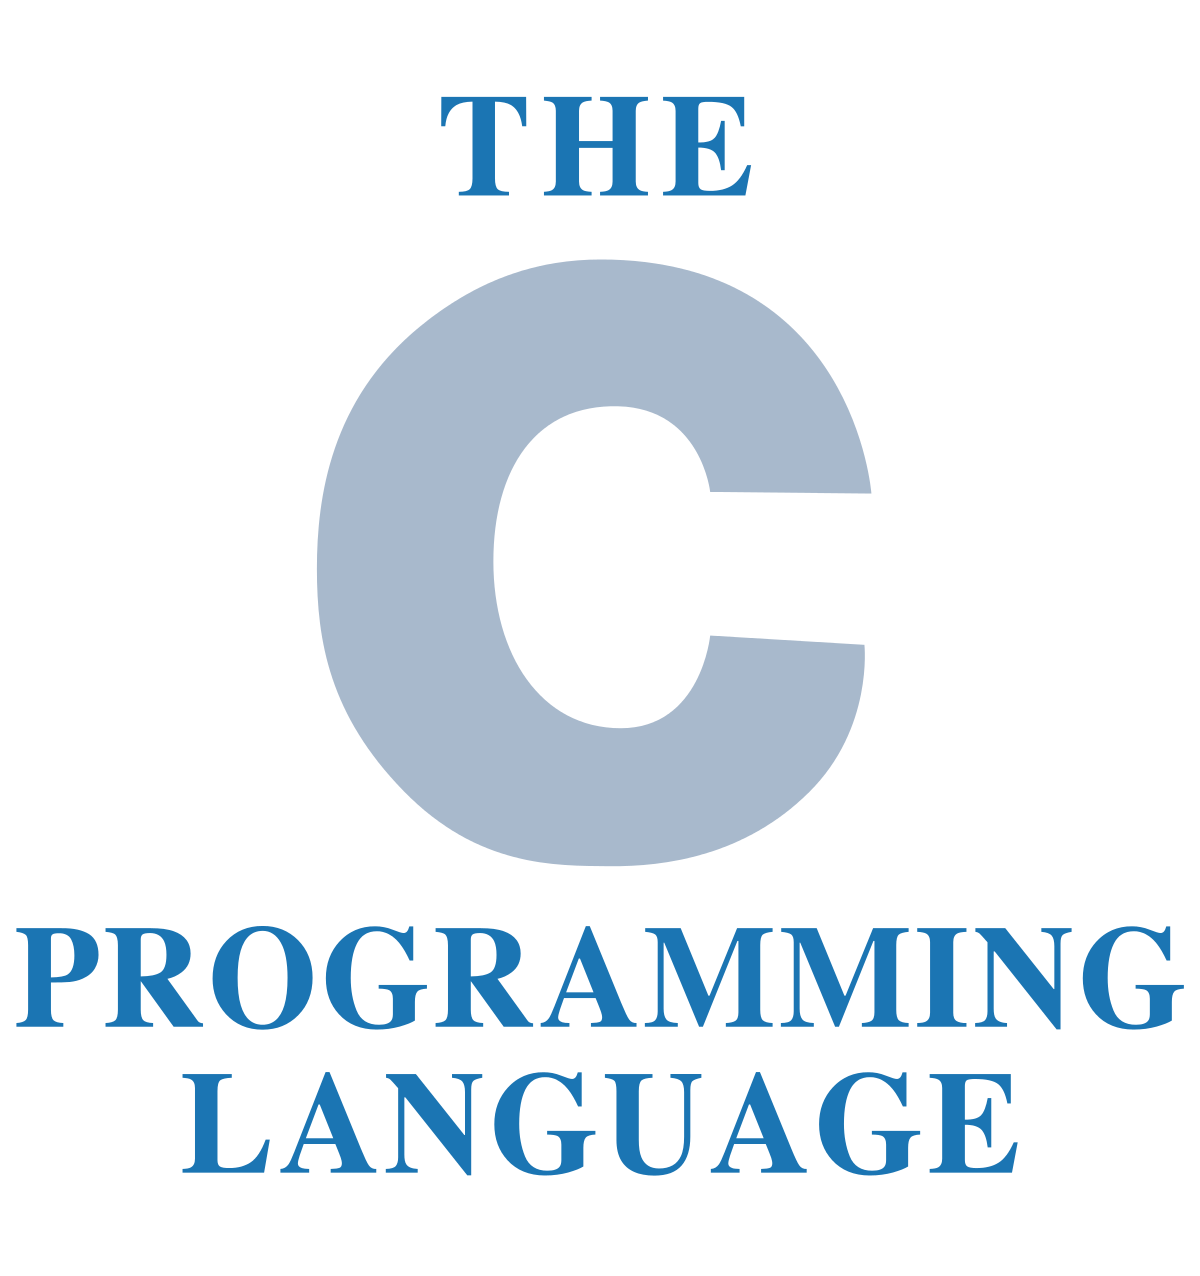 The_C_Programming_Language_logo_svg_201808020524091157044572.png